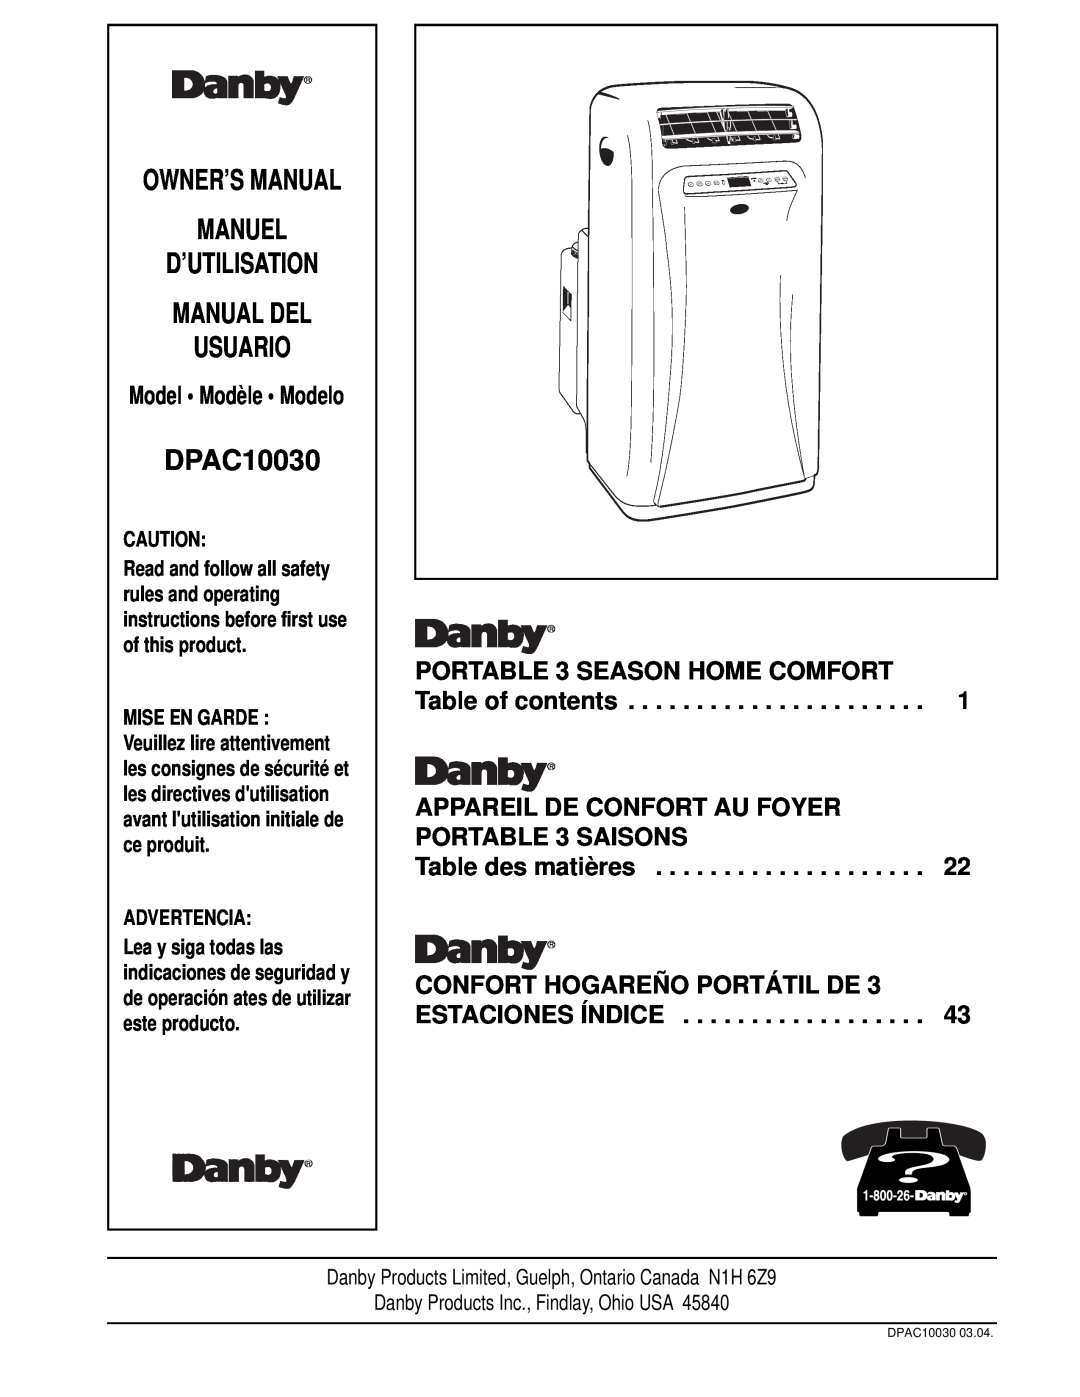 Danby DPAC10030 manual PORTABLE 3 SEASON HOME COMFORT Table of contents, CONFORT HOGAREÑO PORTÁTIL DE 3 ESTACIONES ÍNDICE 